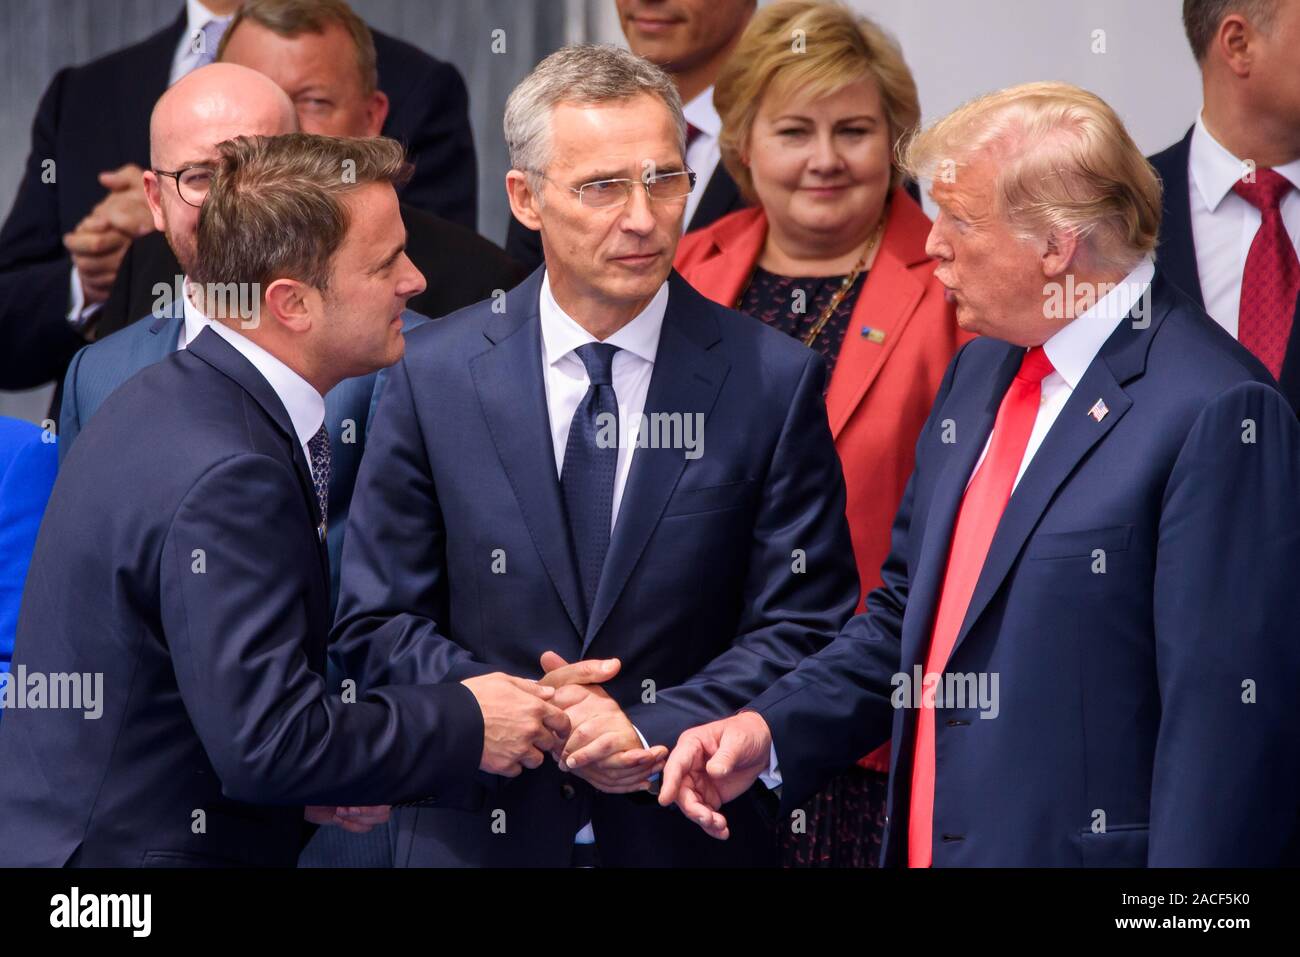 11.07.2018. Bruxelles, Belgio. Xavier Bettel (L), il primo ministro del Lussemburgo, Jens Stoltenberg (C), il Segretario generale della NATO e Donald Trump (R), il Presidente degli Stati Uniti d'America, durante la cerimonia ufficiale di apertura della NATO (Organizzazione del Trattato del Nord Atlantico) Summit 2018 Foto Stock